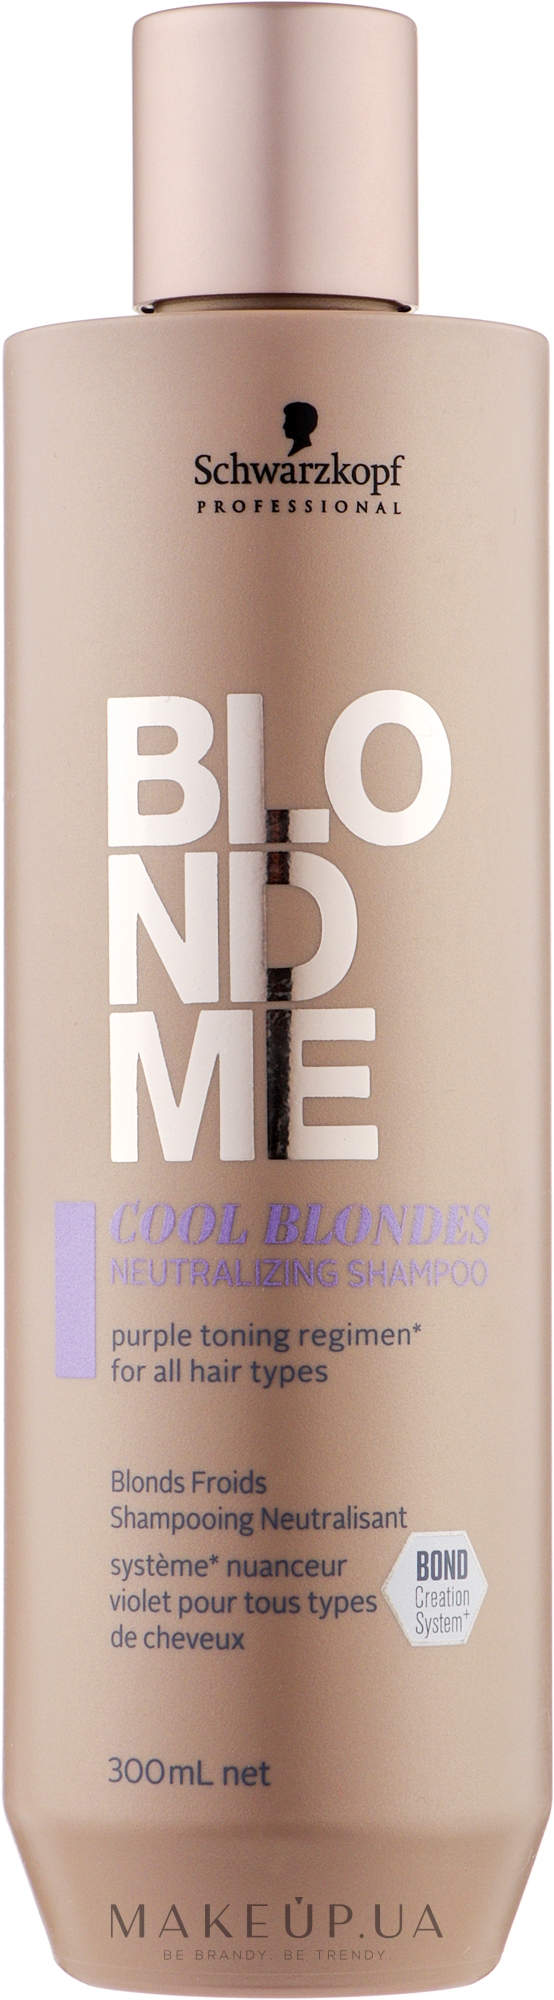 Нейтралізувальний шампунь для волосся холодних відтінків блонд - Schwarzkopf Professional BlondMe Cool Blondes Neutralizing Shampoo — фото 300ml